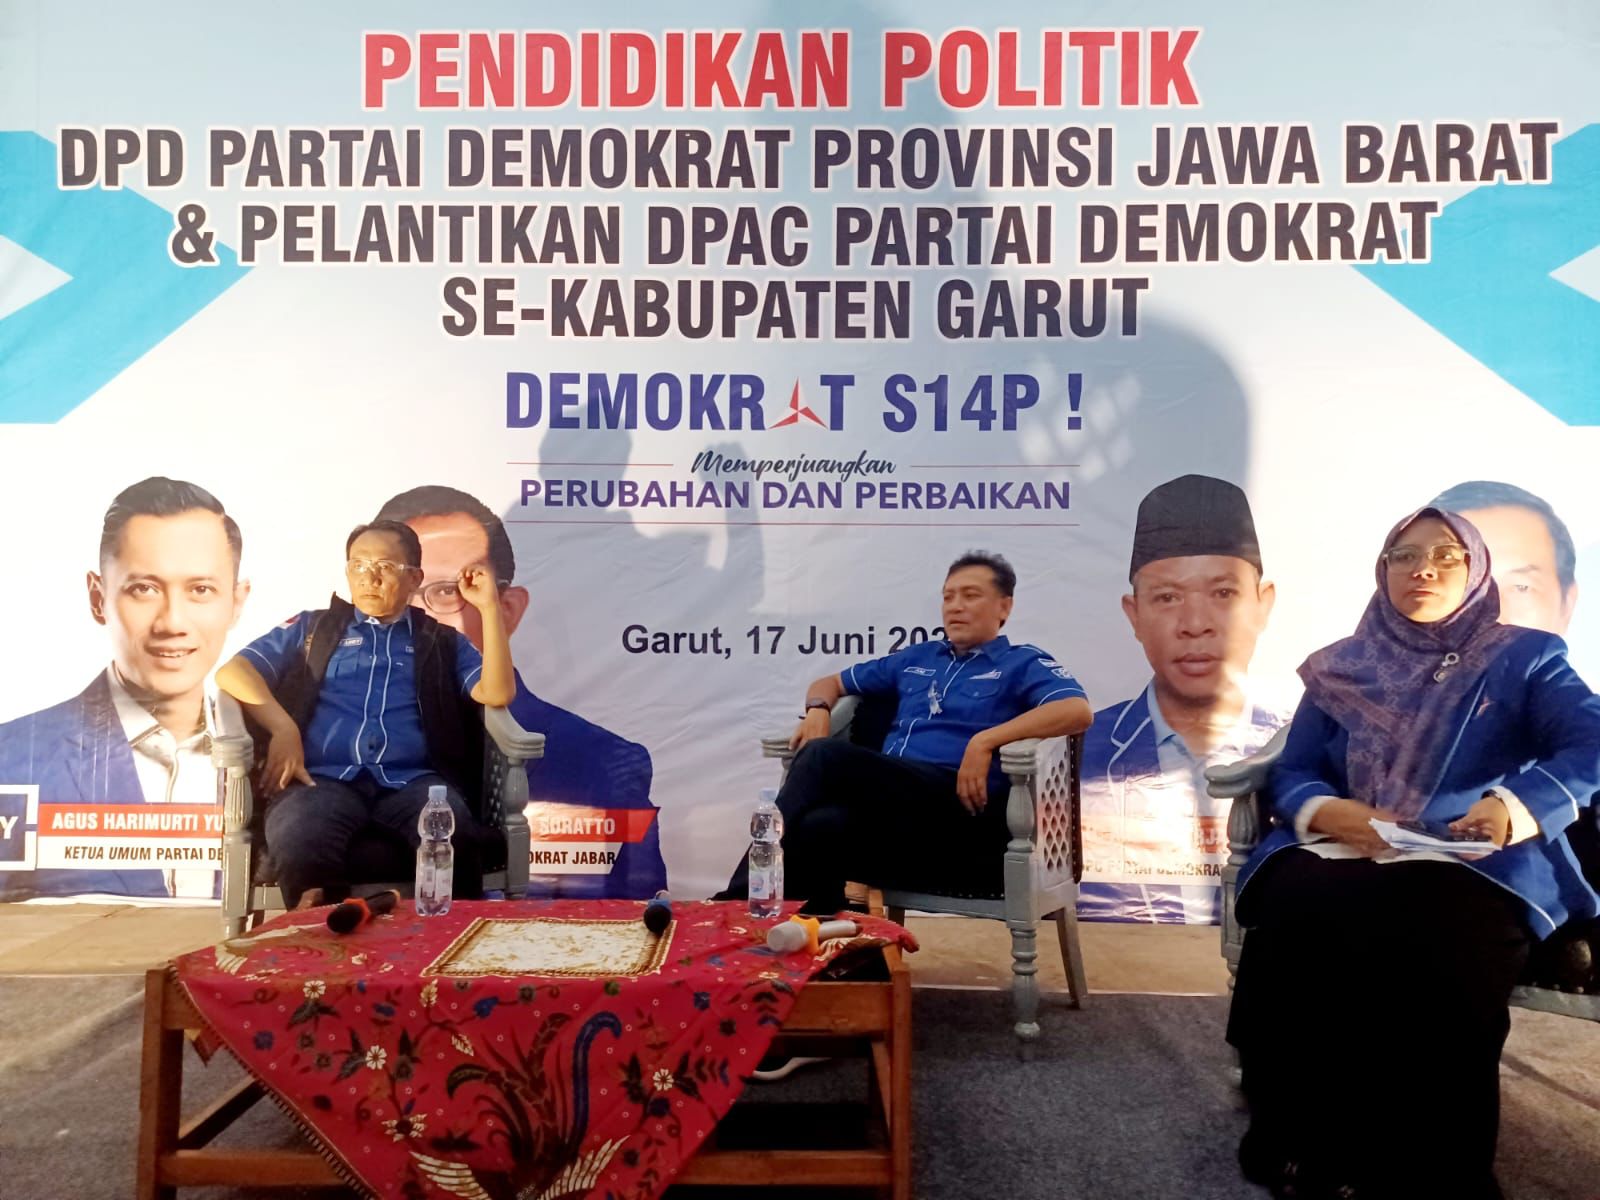 DPD Demokrat Jabar Gelar Pelantikan dan Pendidikan Politik kepada Pengurus DPAC di Kabupaten Garut